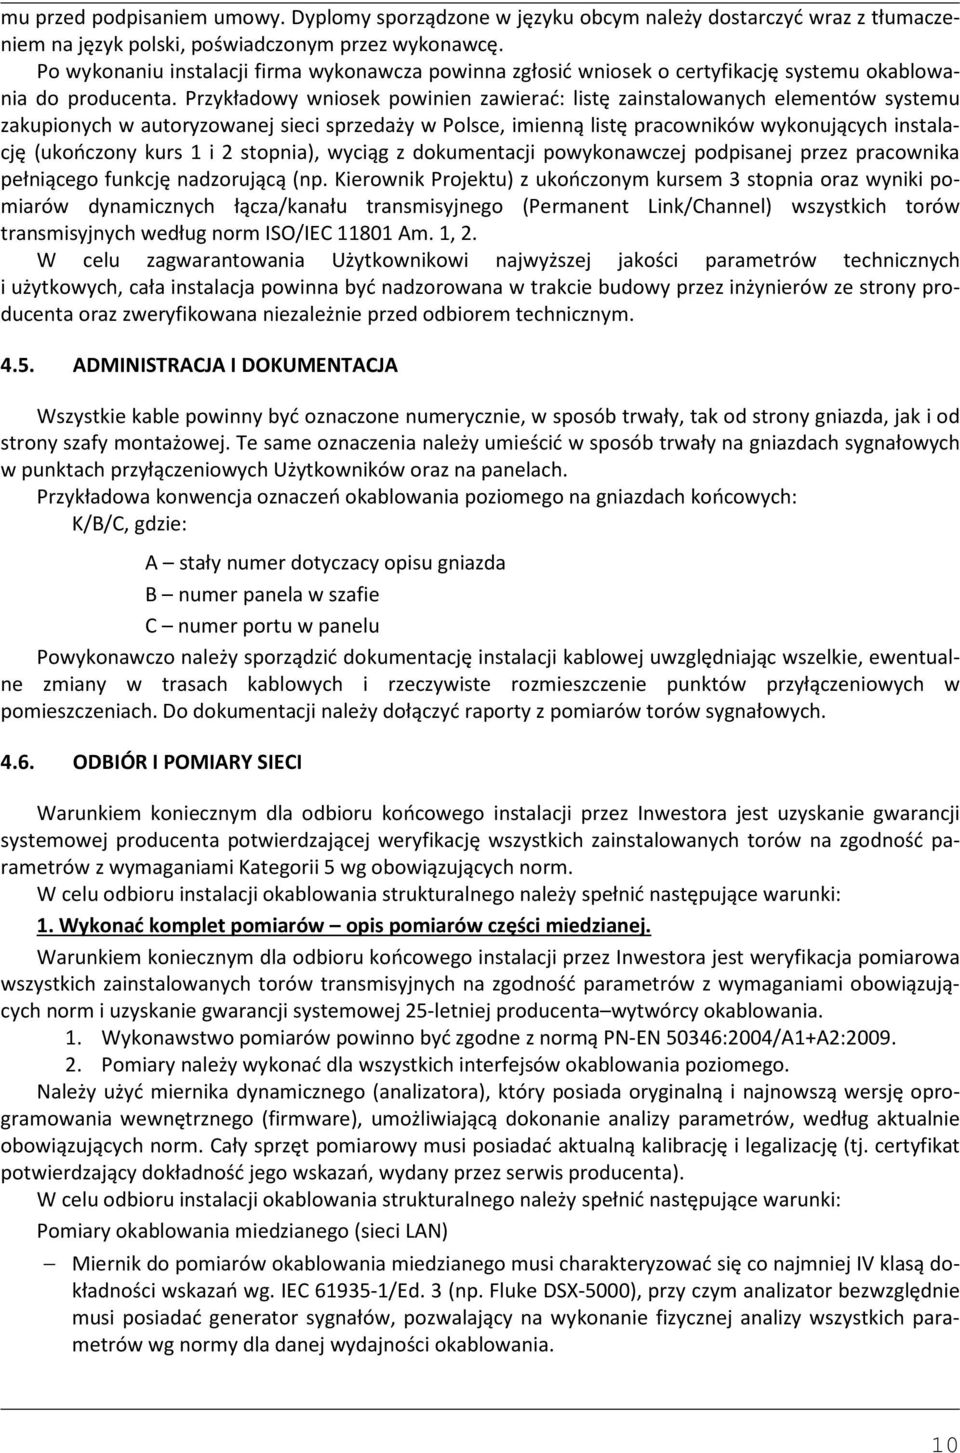 Przykładowy wniosek powinien zawierać: listę zainstalowanych elementów systemu zakupionych w autoryzowanej sieci sprzedaży w Polsce, imienną listę pracowników wykonujących instalację (ukończony kurs